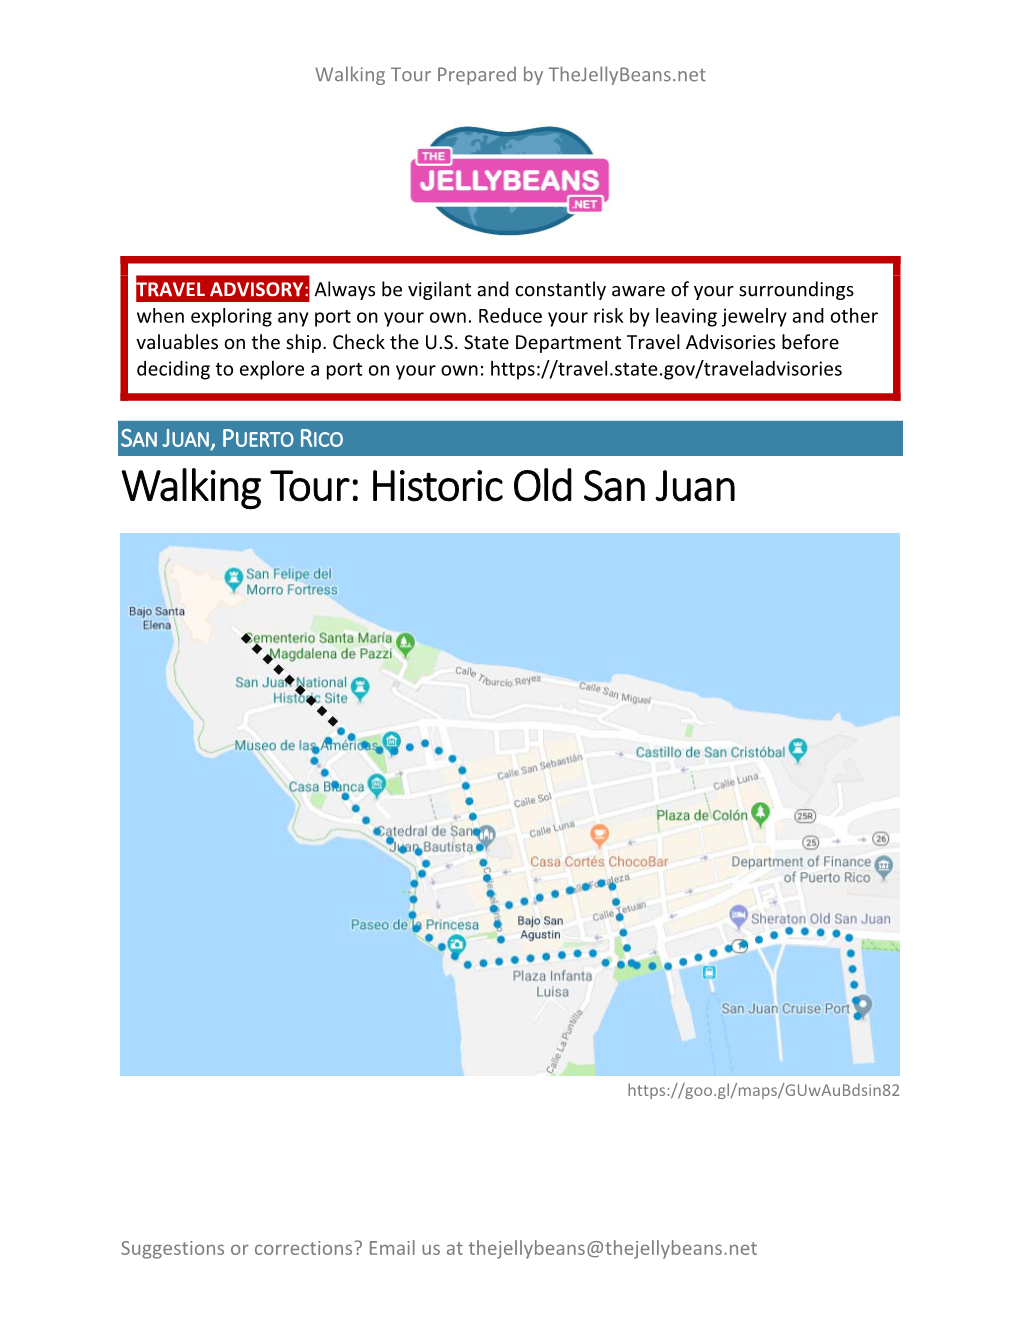 Walking Tour: Historic Old San Juan